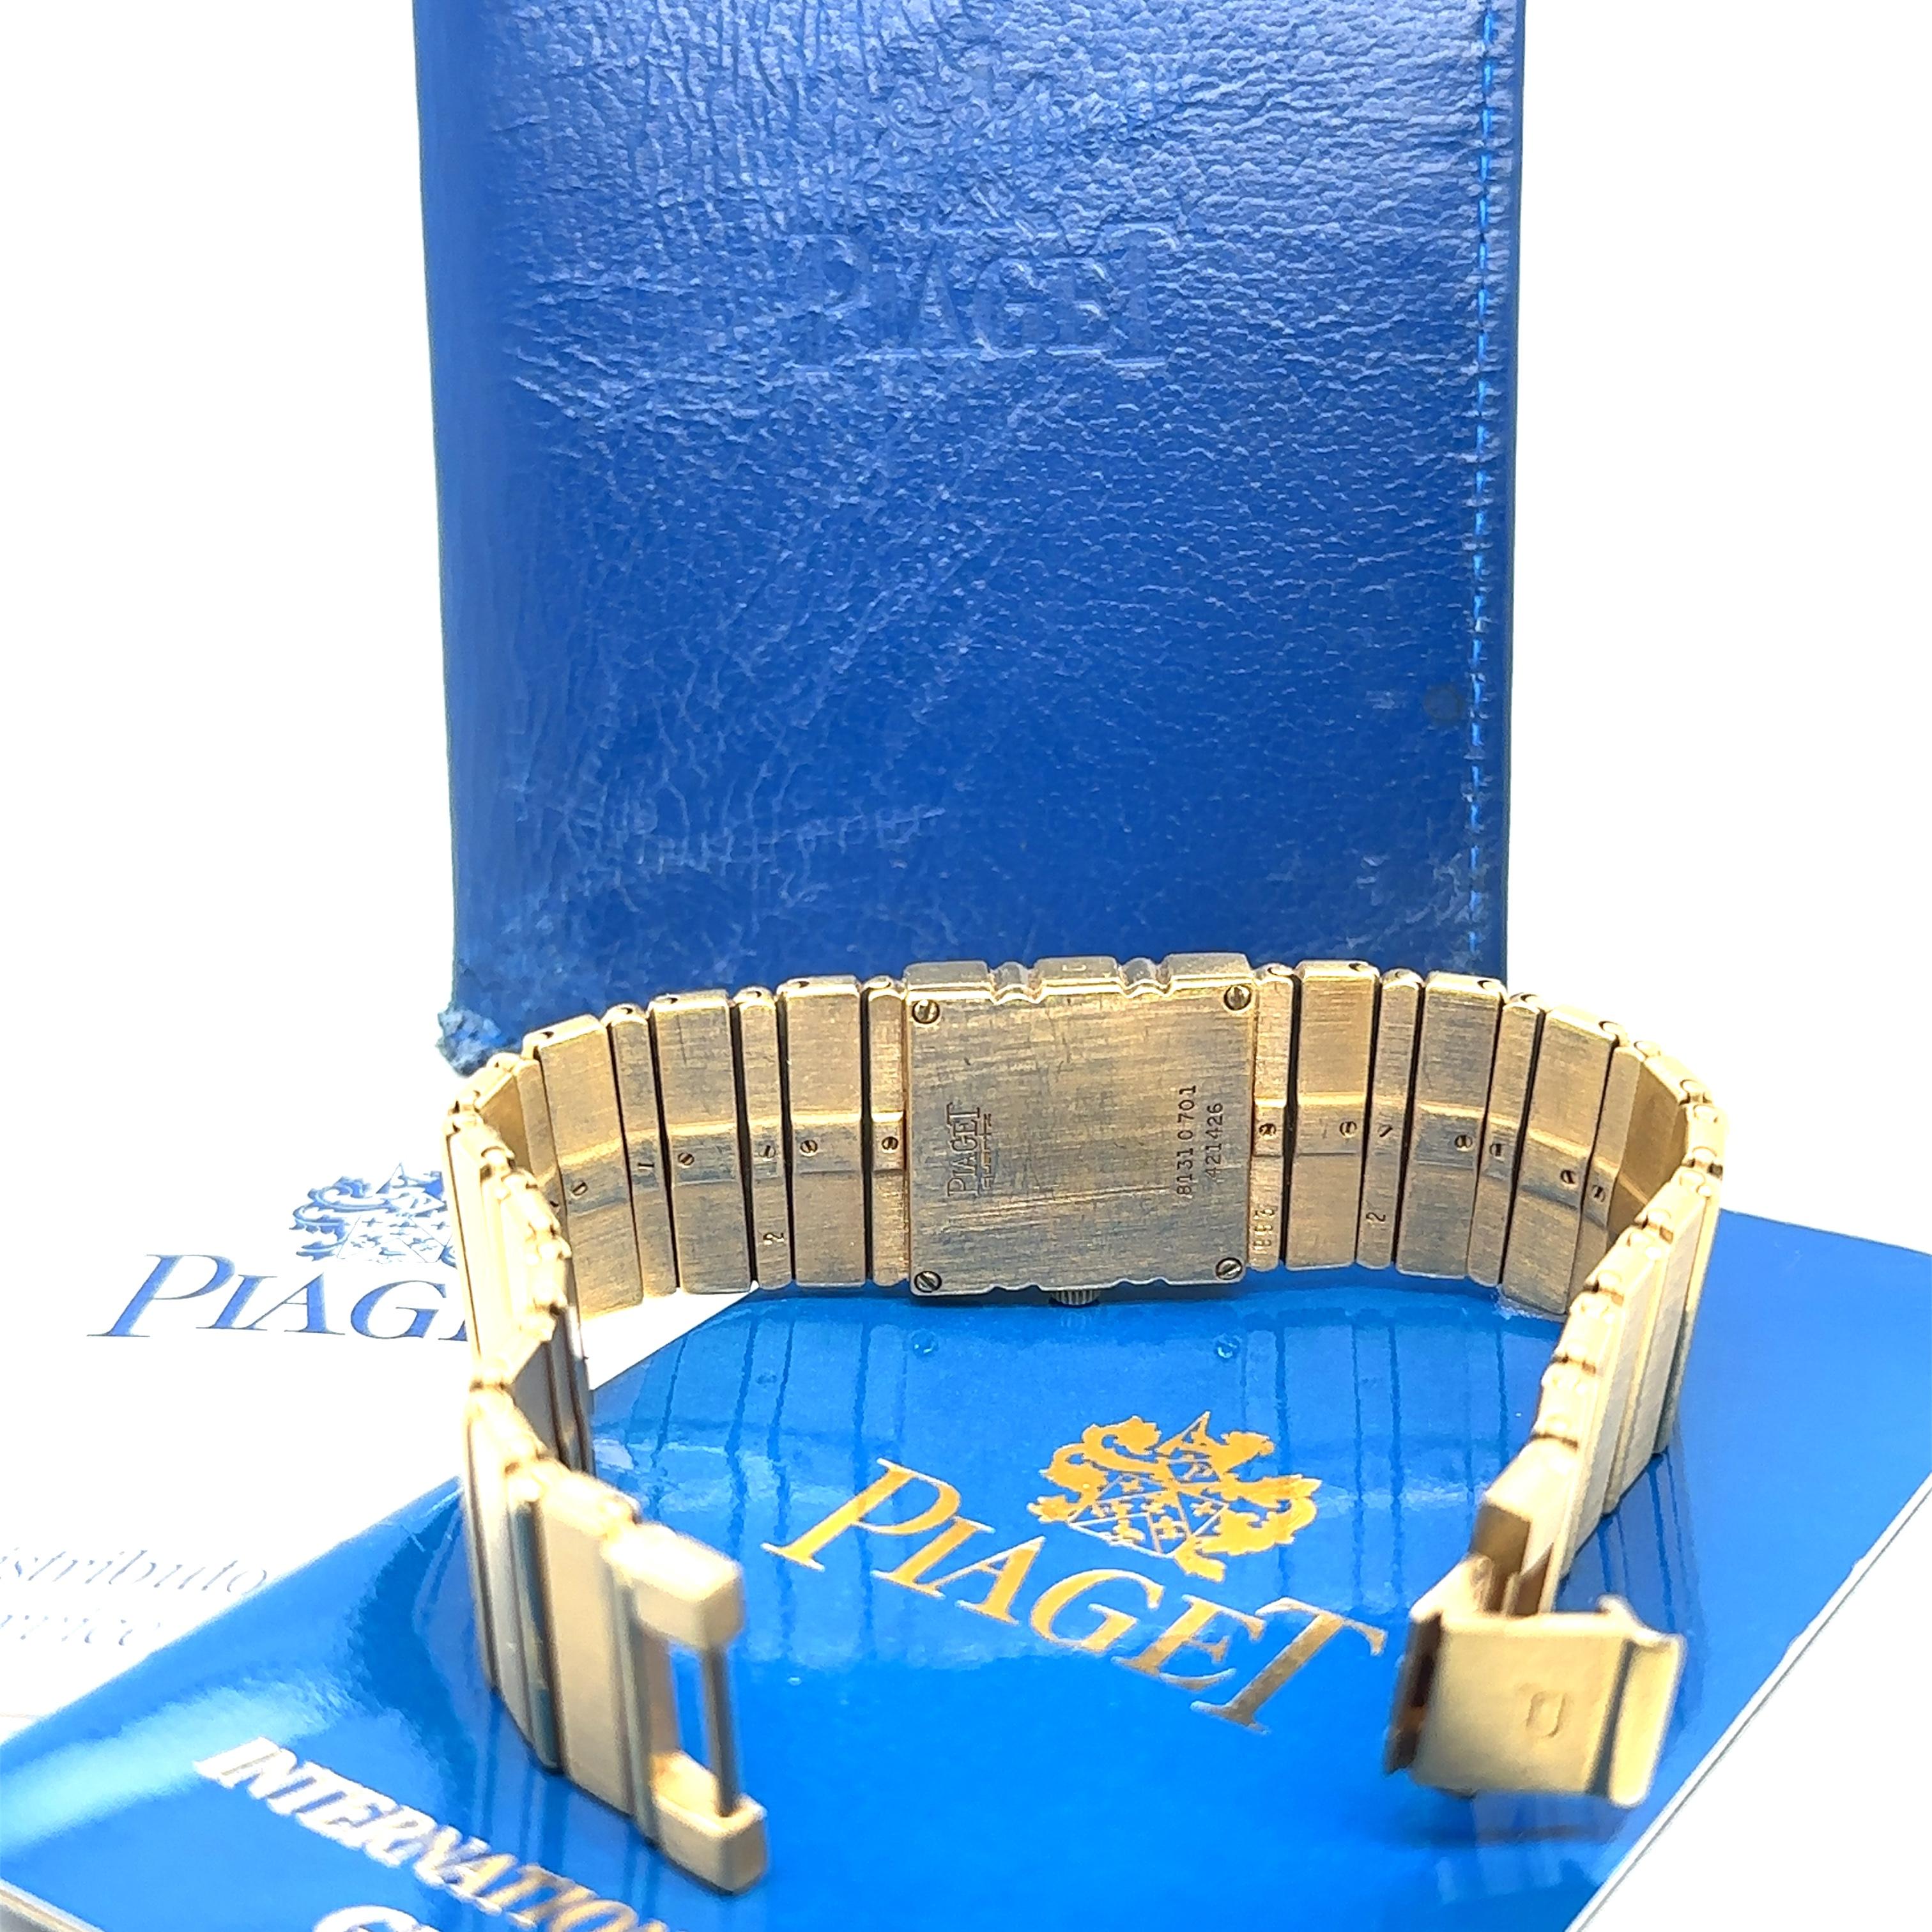 PIAGET Polo 8131-C 701 18K Gold Unisex Quartz Watch - 101.25GR 5